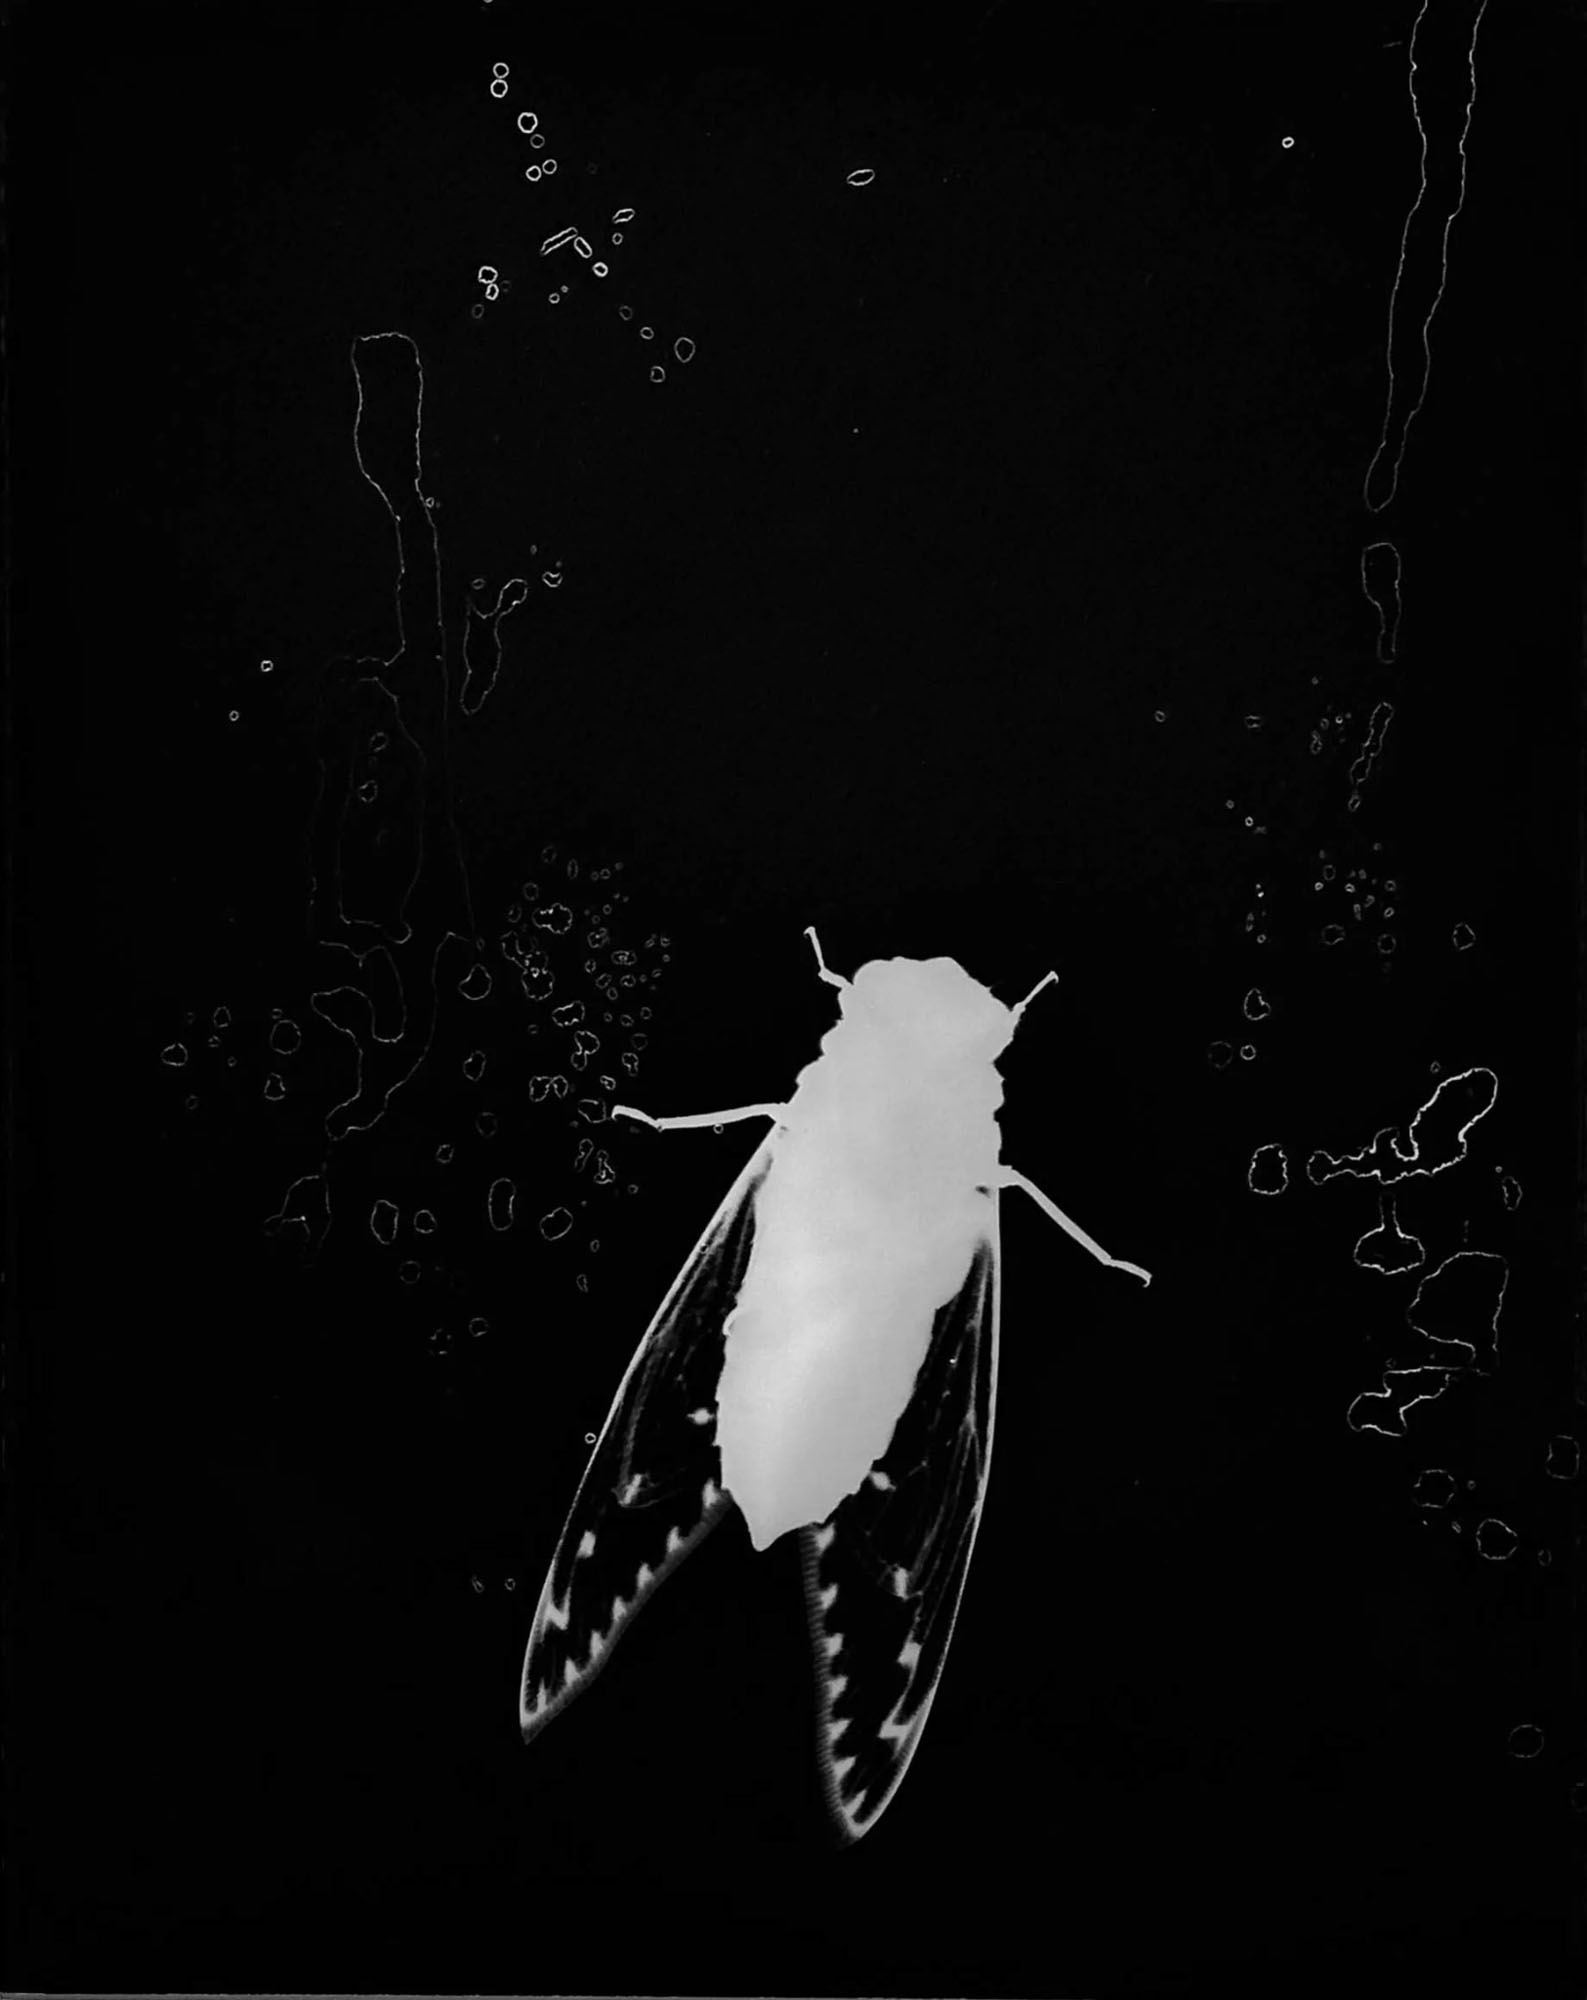 Cicada, 2019, Borneo. © Zana Briski